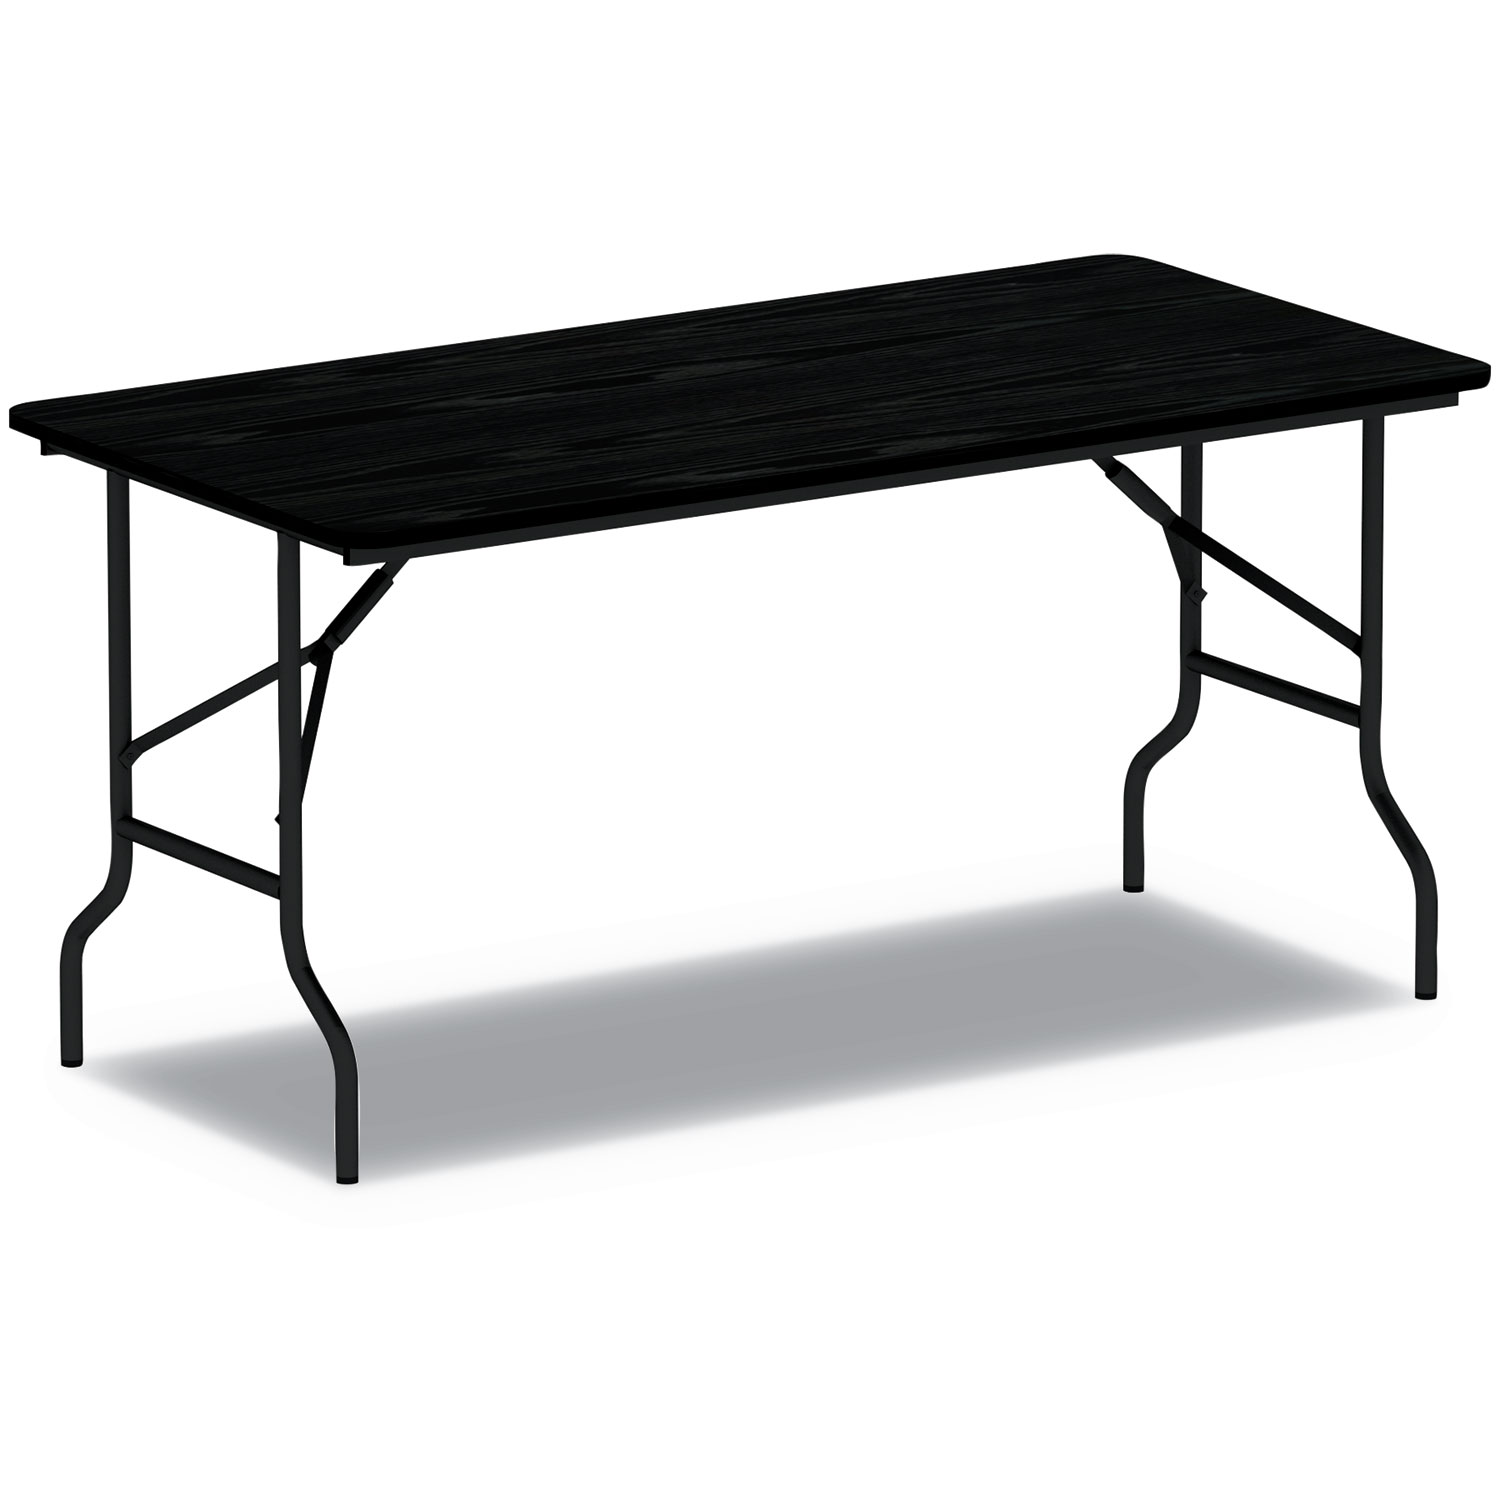  Alera ALEFT724824BK Wood Folding Table, 48w x 23 7/8d x 29h, Black (ALEFT724824BK) 